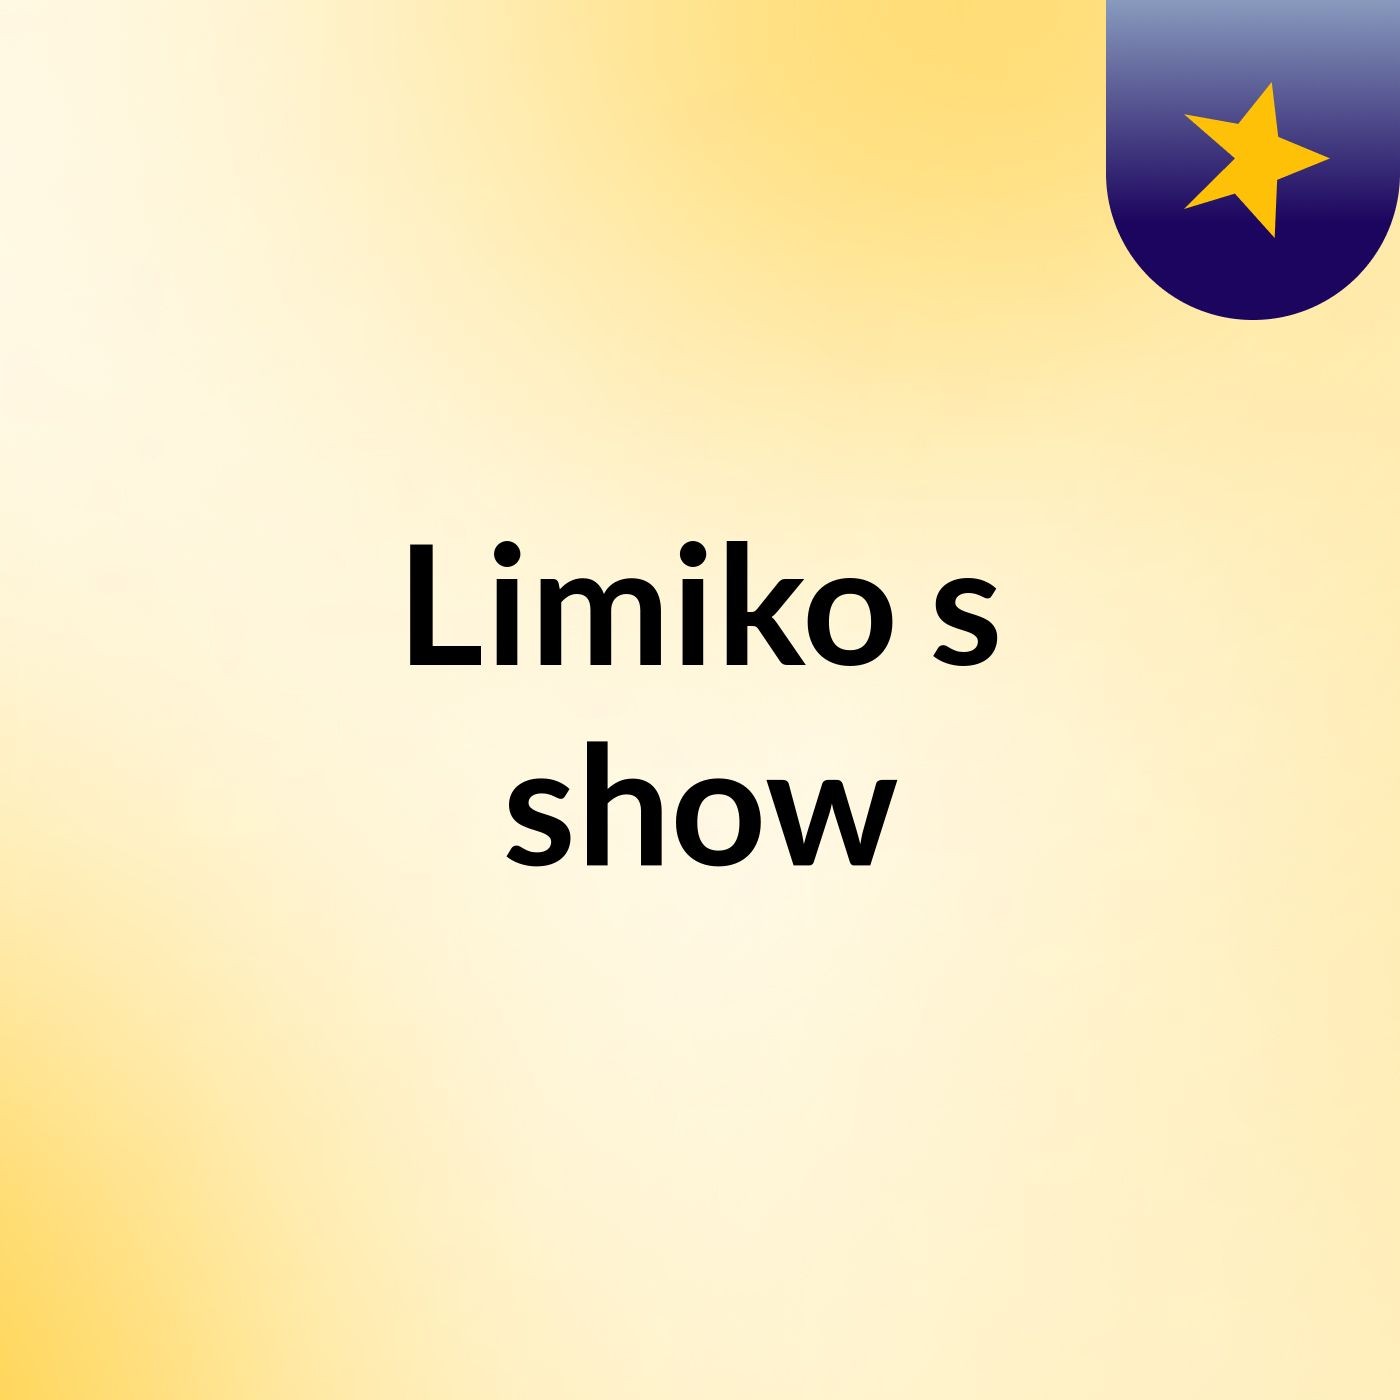 Limiko's show